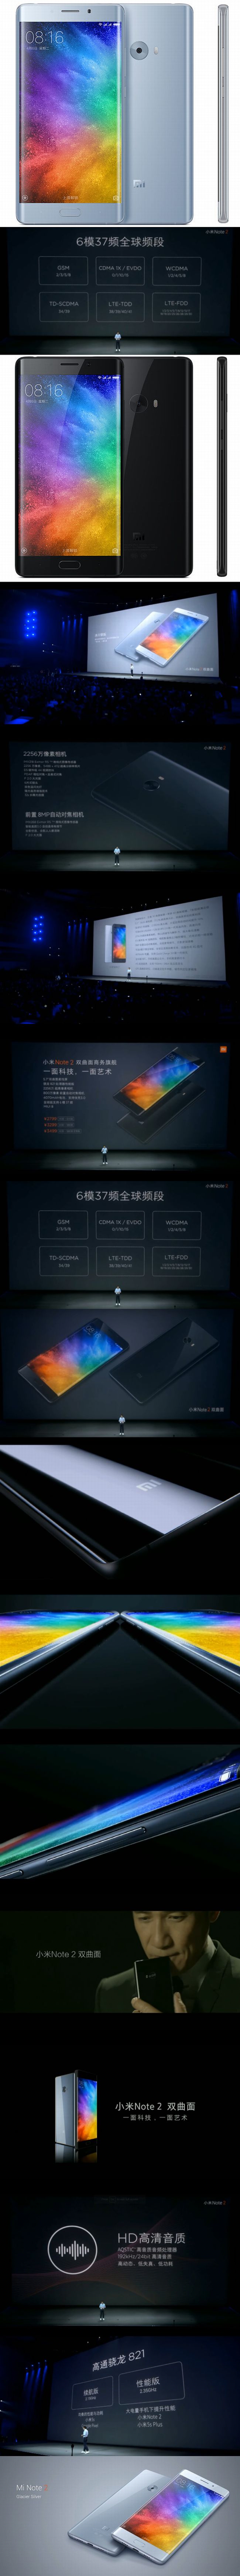 Megjelent a Xiaomi Mi Note 2: olcsó és nagyon okos